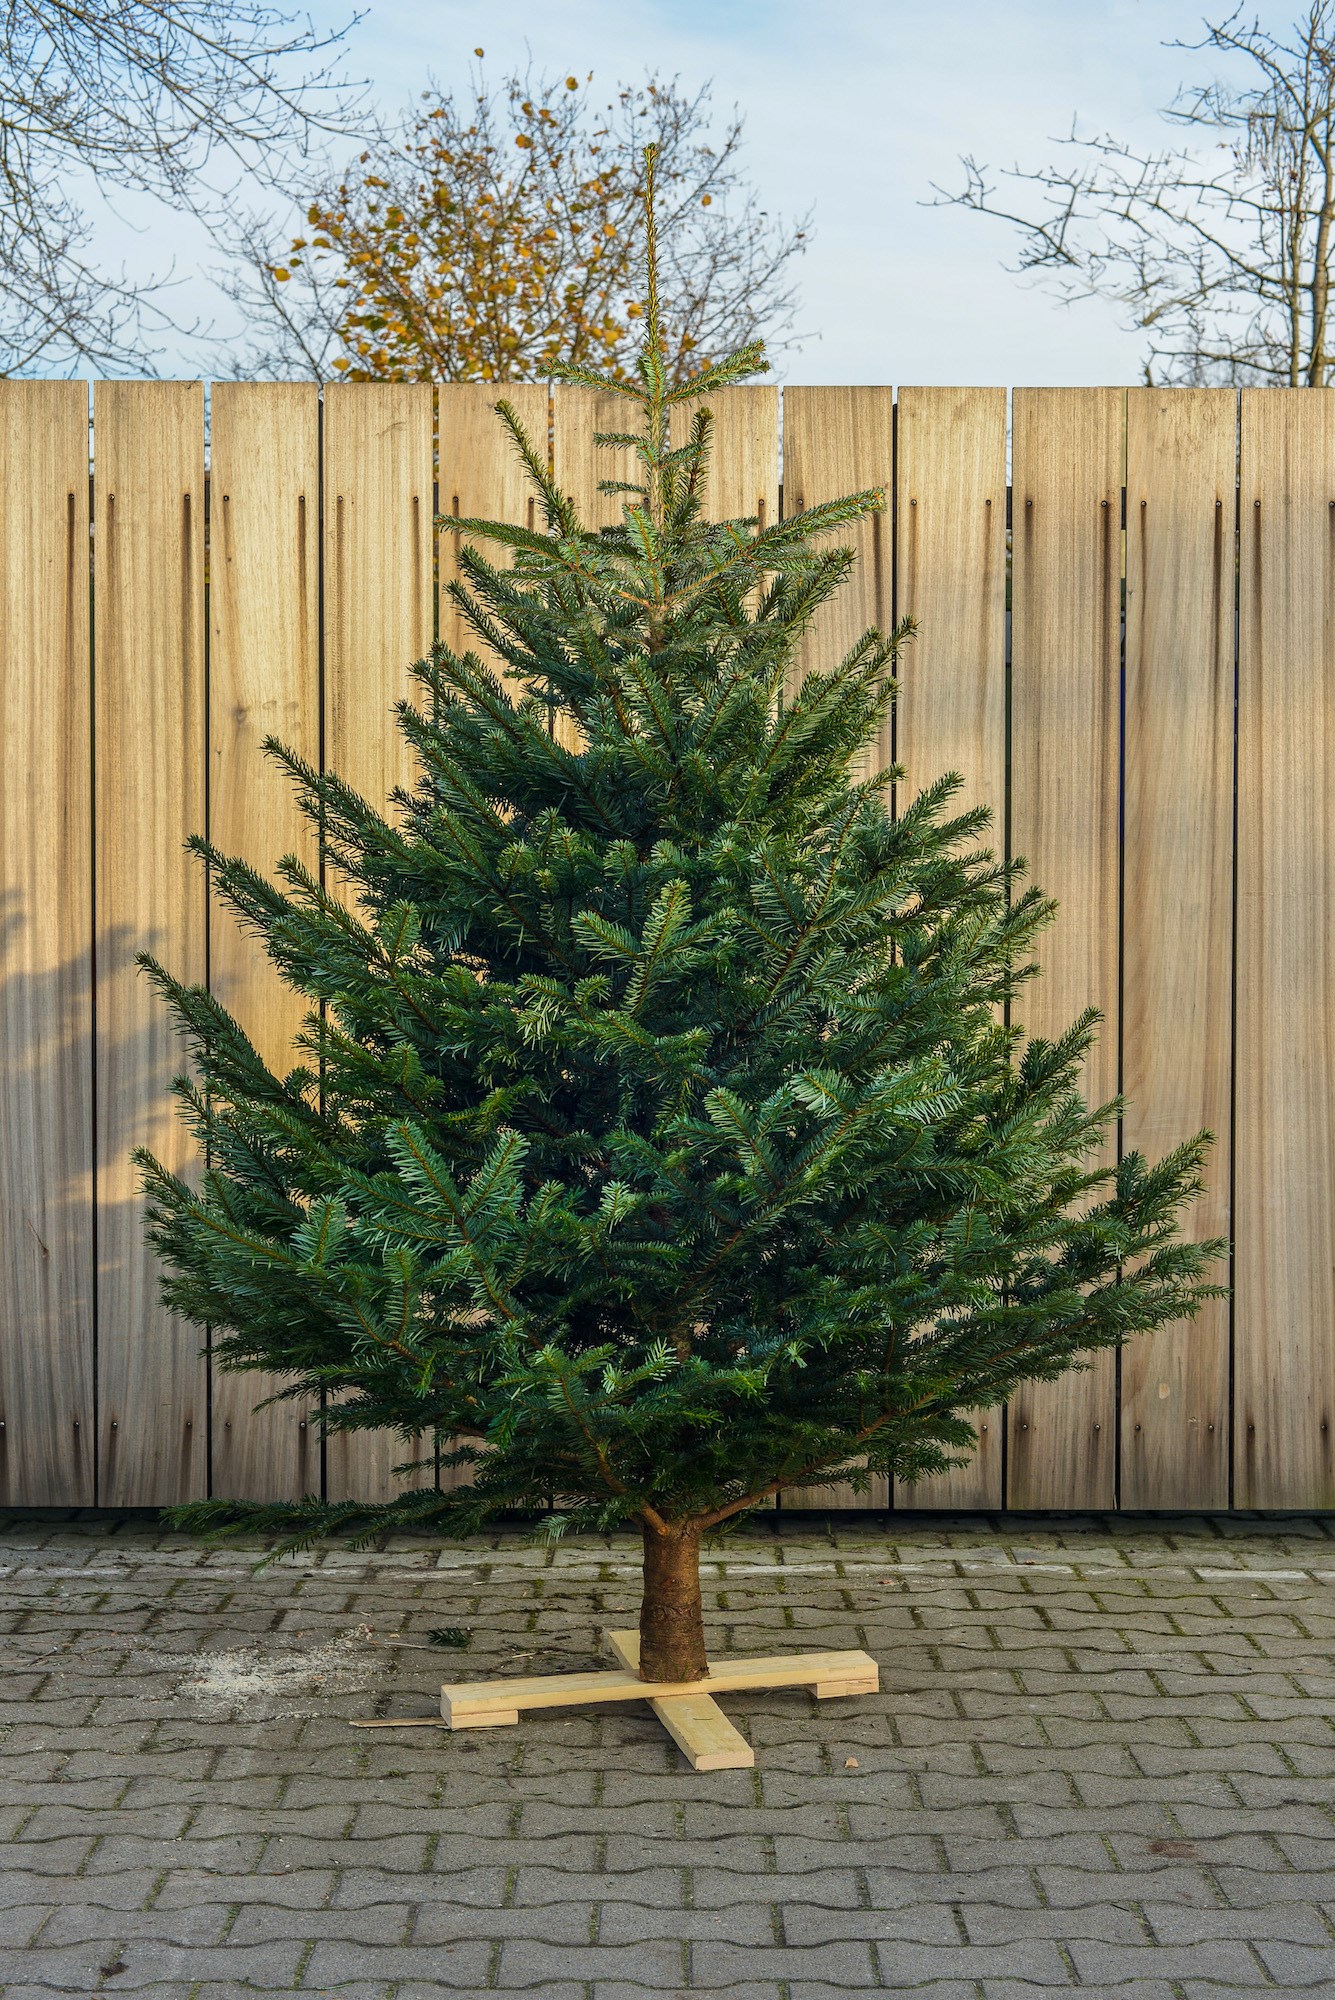 Keelholte auditie Inefficiënt Online bestellen kerstboom in Groningen